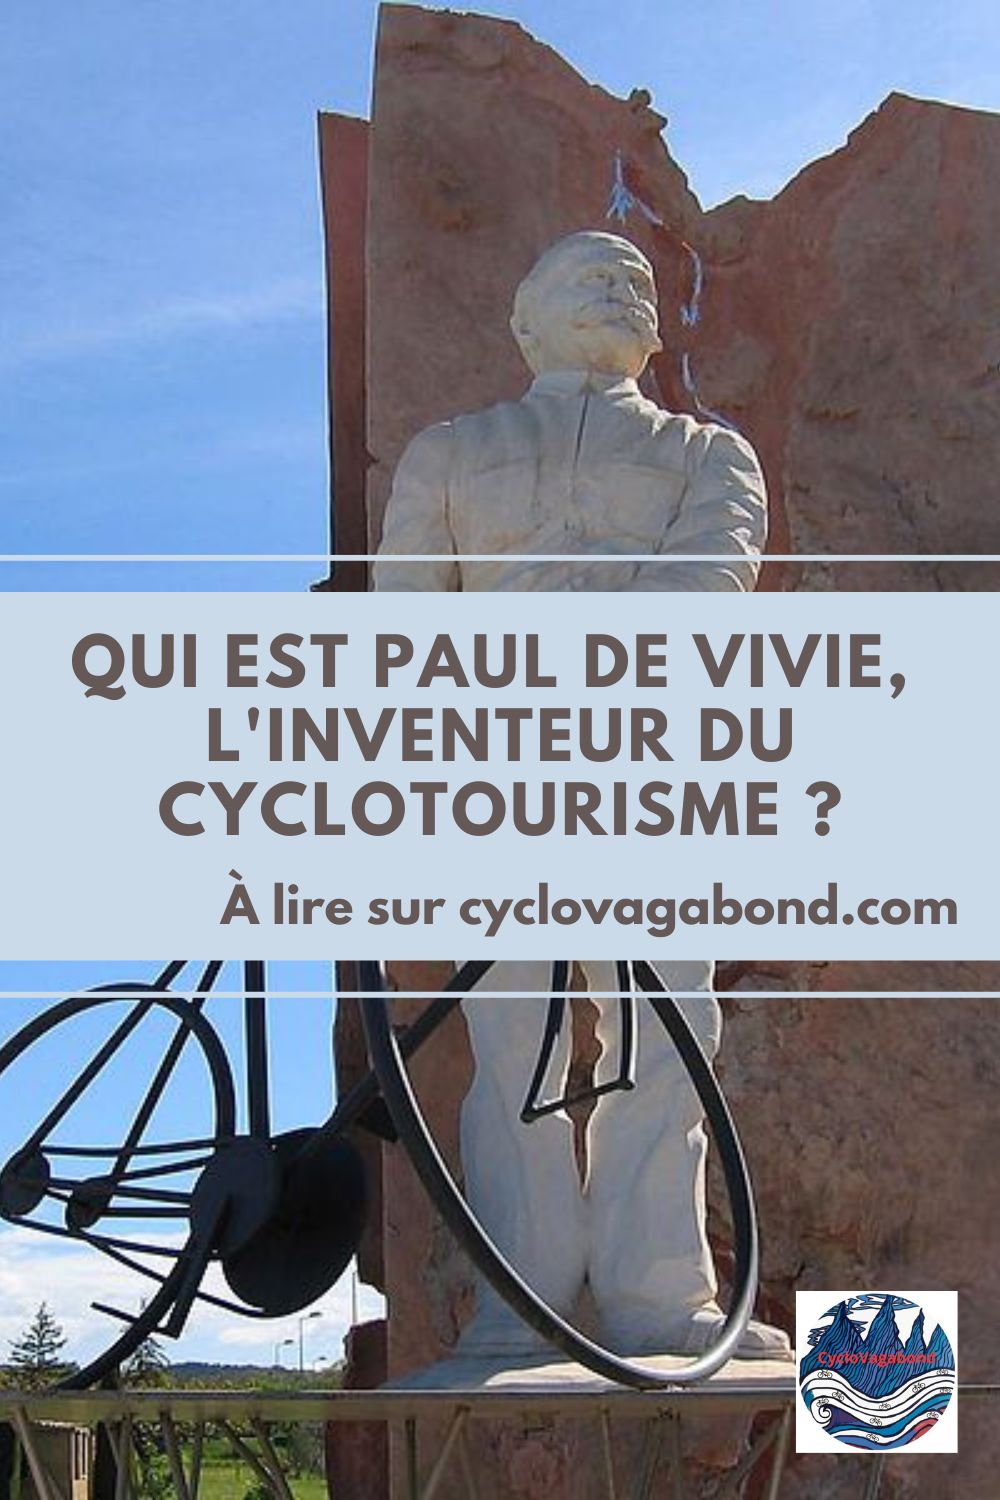 Paul de Vivie dit Vélocio est considéré comme l'inventeur du voyage à vélo. Grâce à ses observations et sa passion pour le cyclotourisme, cet adepte des balades à vélo a contribué à l'évolution de la bicyclette. À découvrir dans cet article !